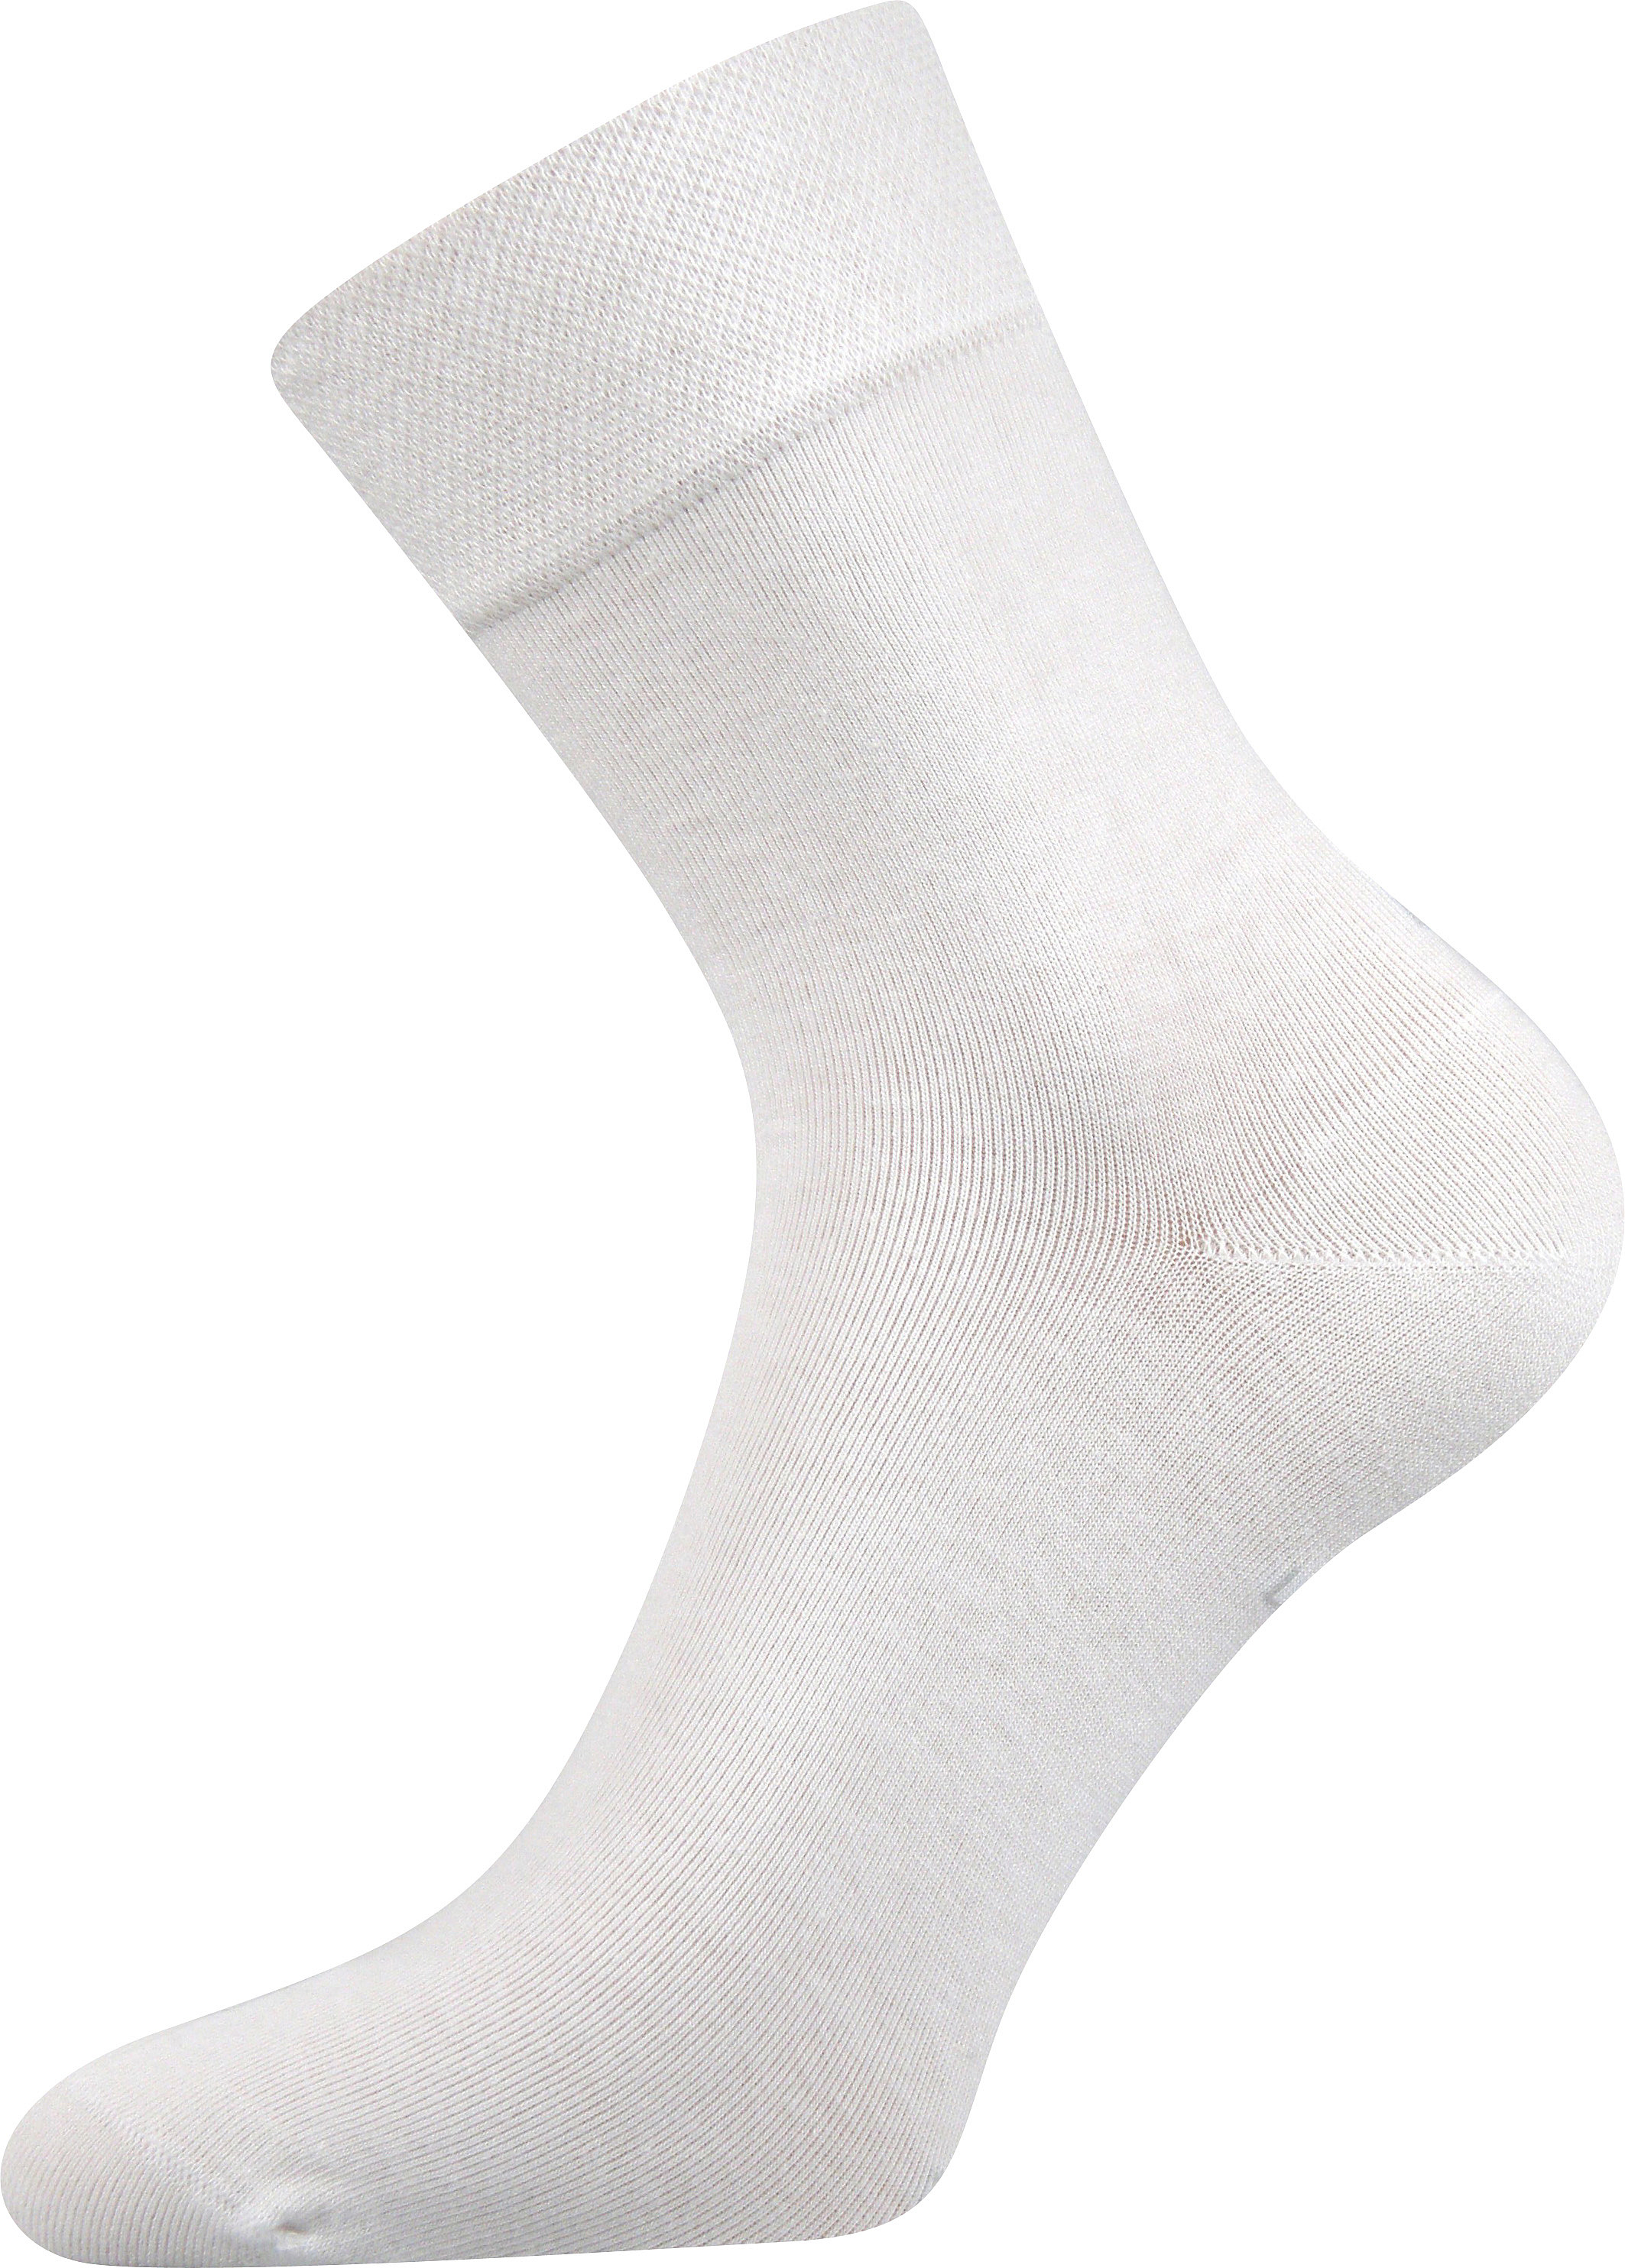 Ponožky společenské Lonka Haner - bílé, 43-46